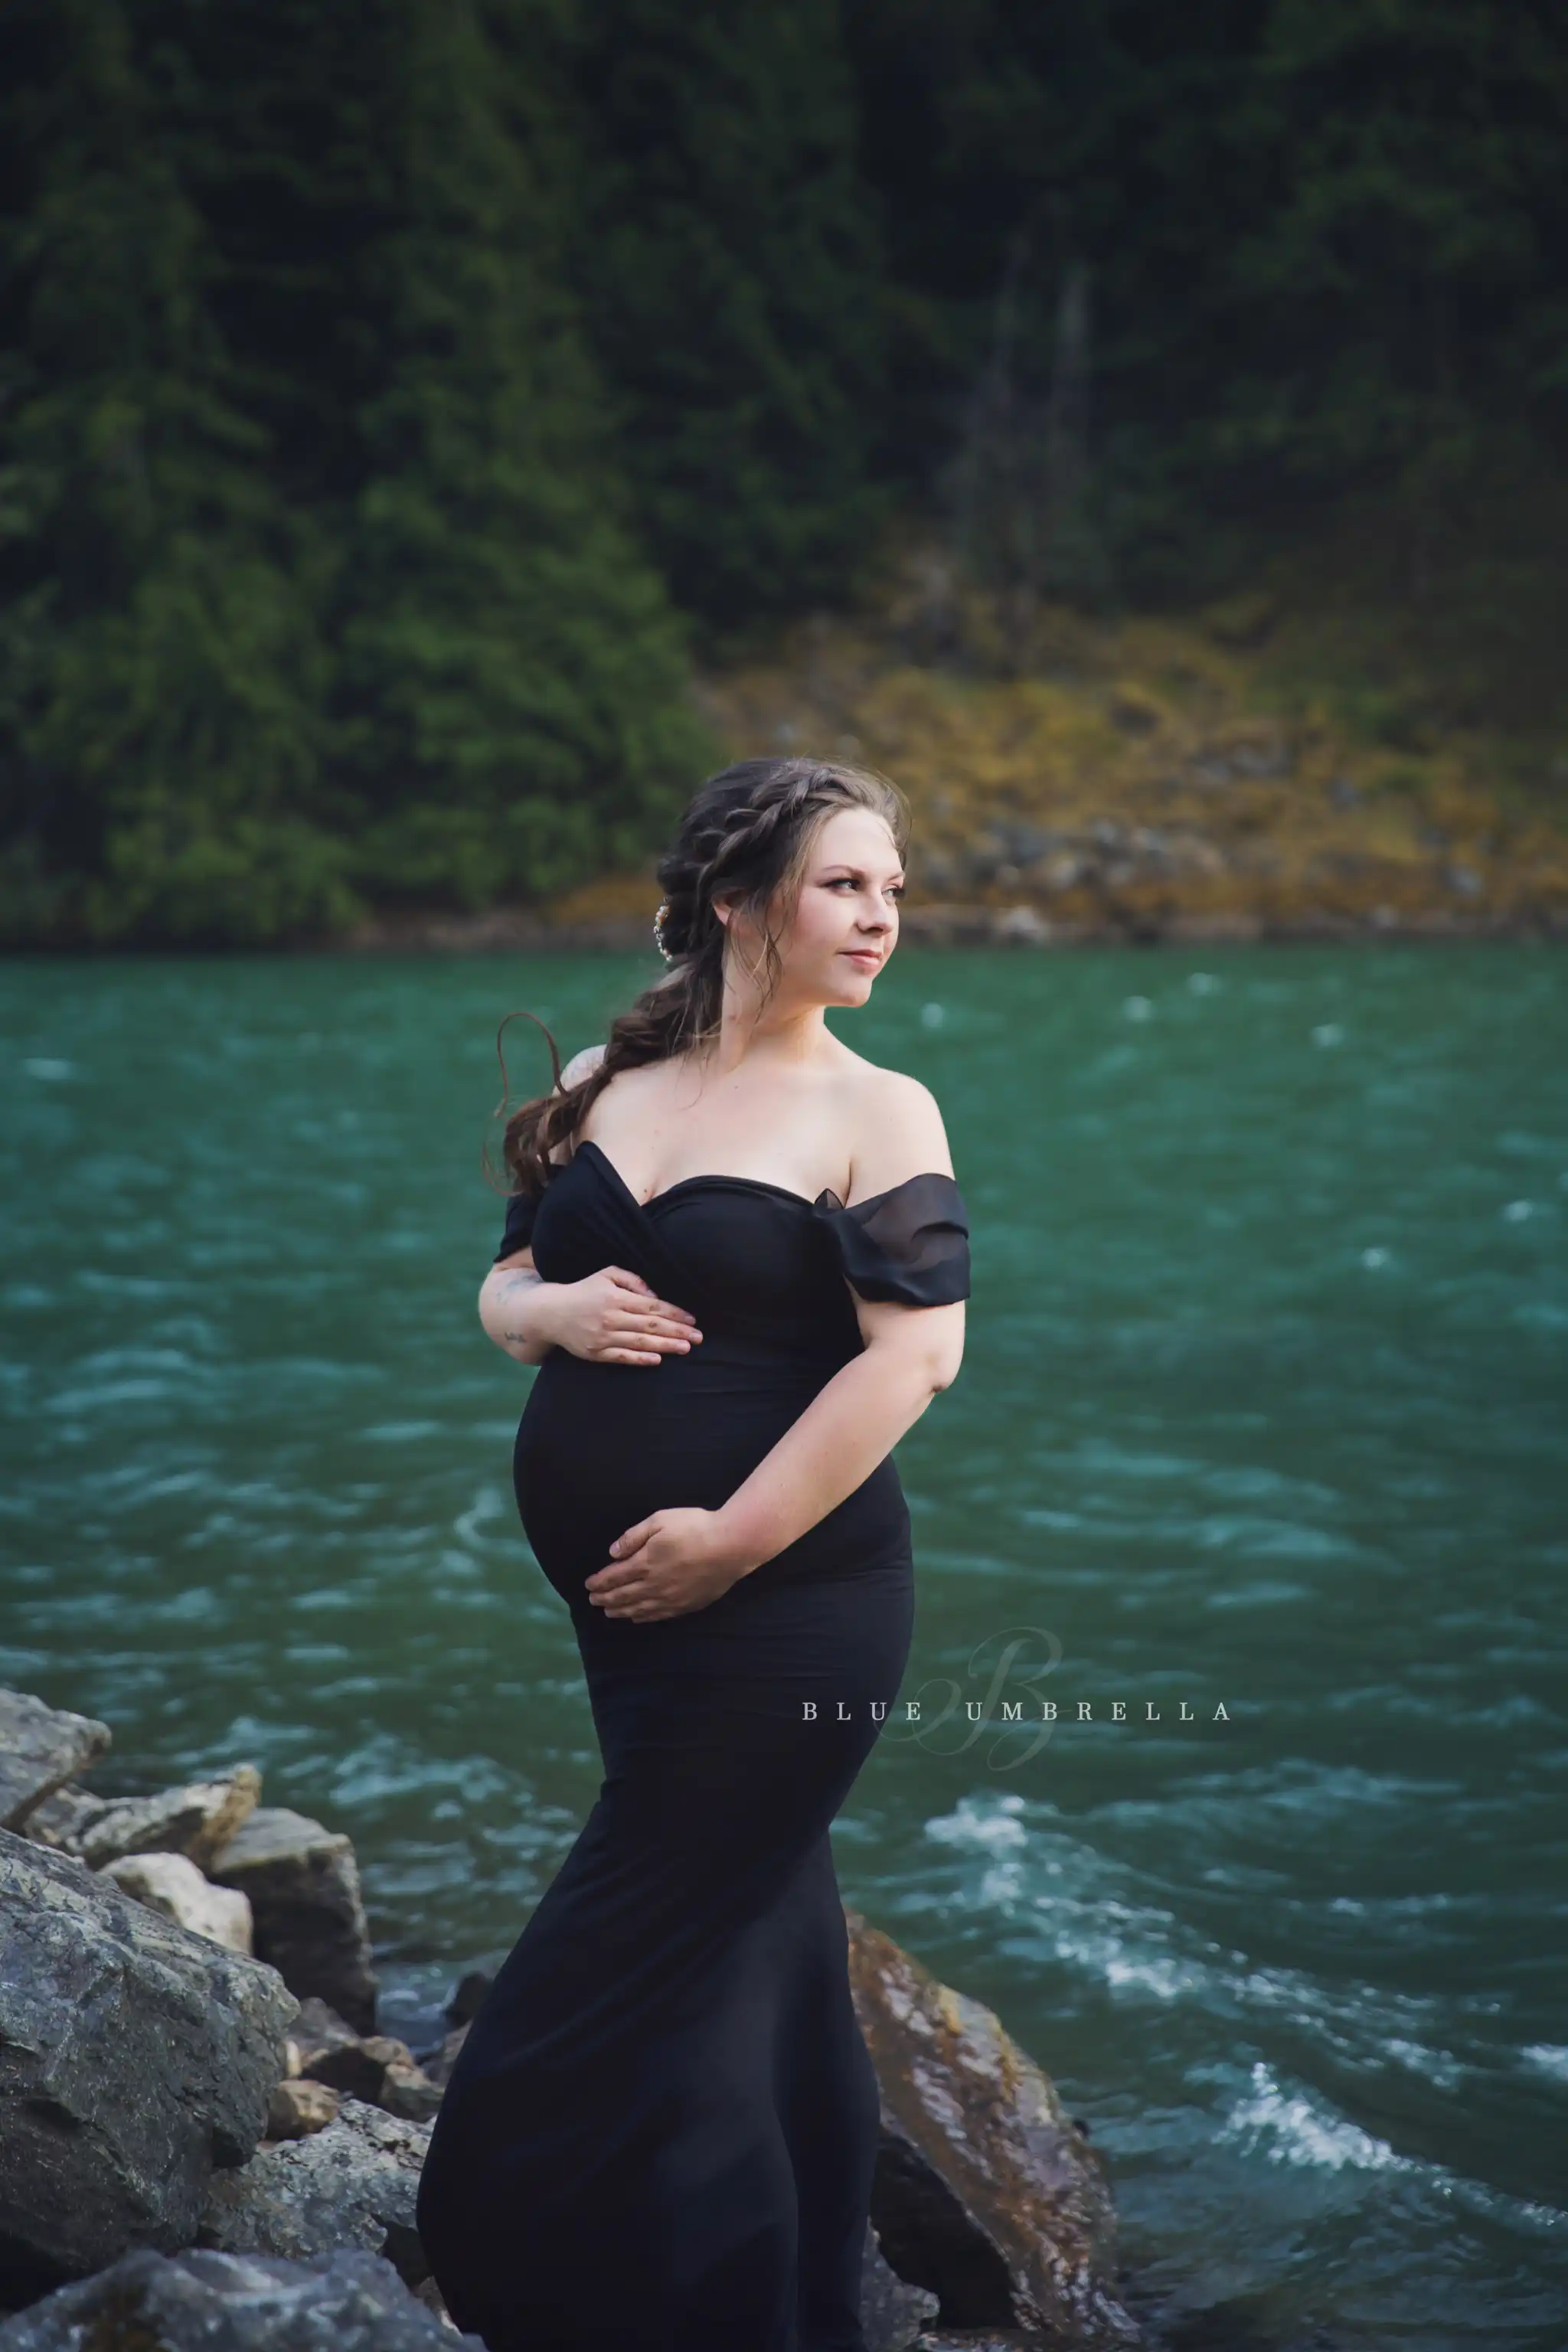 Maternity photo shoot ideas outdoors